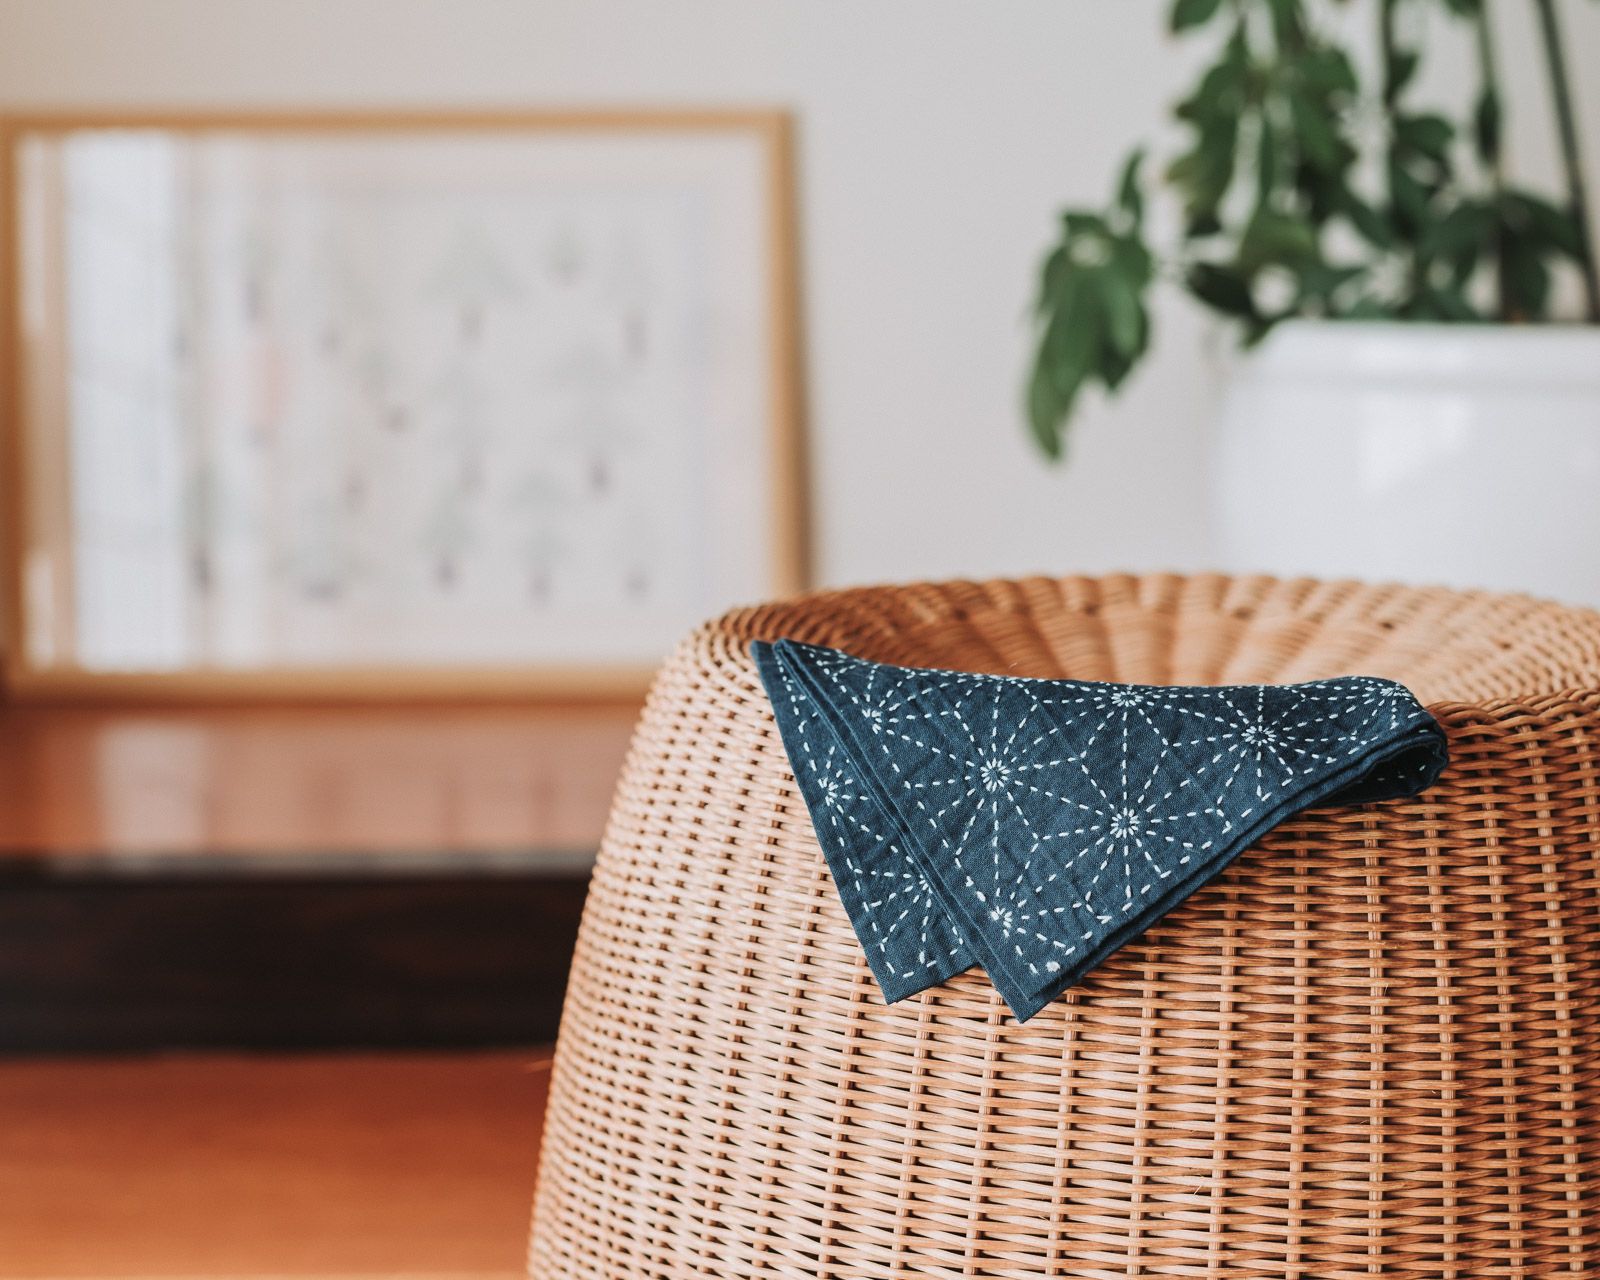 Indigo sashiko cloth with hemp leaf pattern lying on a rattan chair.